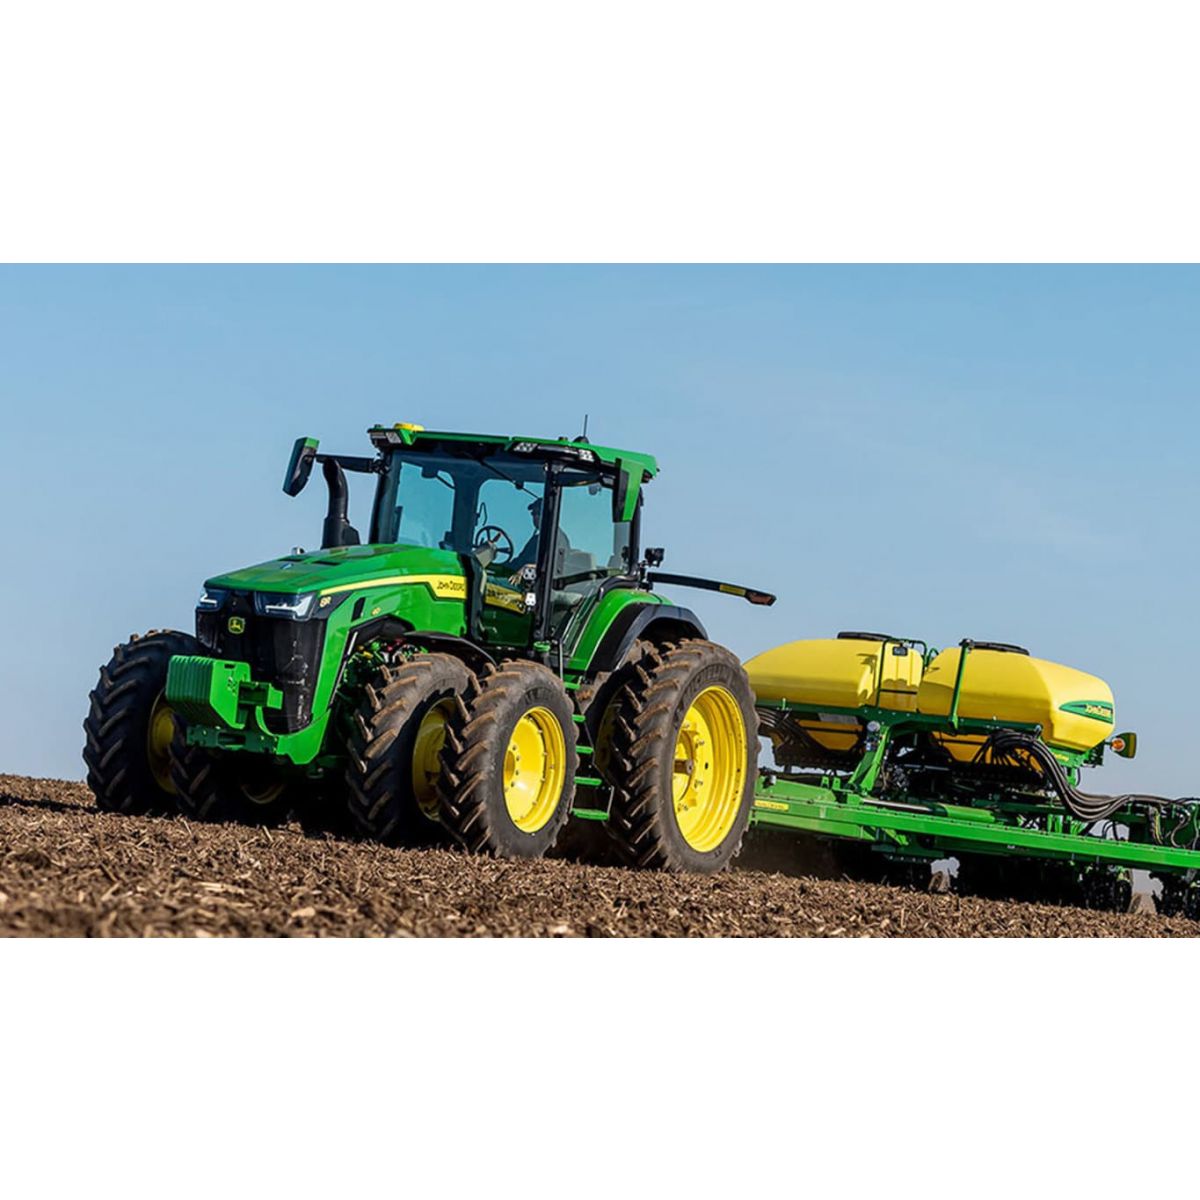 8R 230 Tractor, 230HP, Row-Crop Tractors